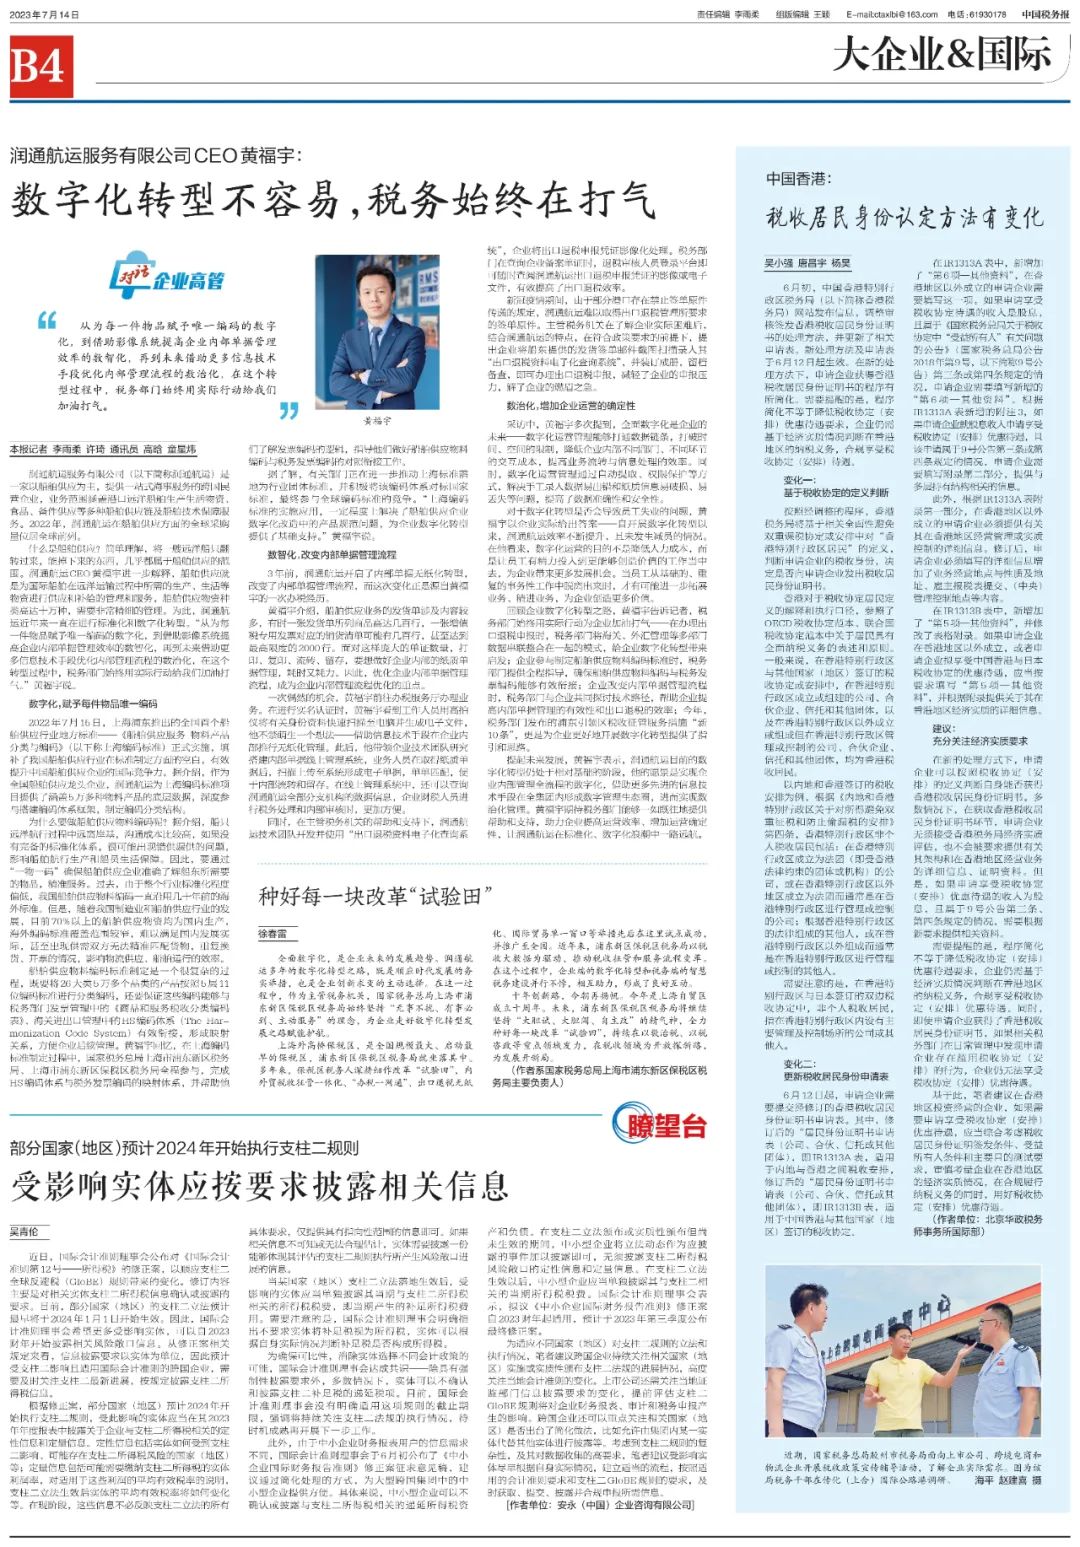 华政在《中国税务报》发文解读香港税收居民身份认定方法变化